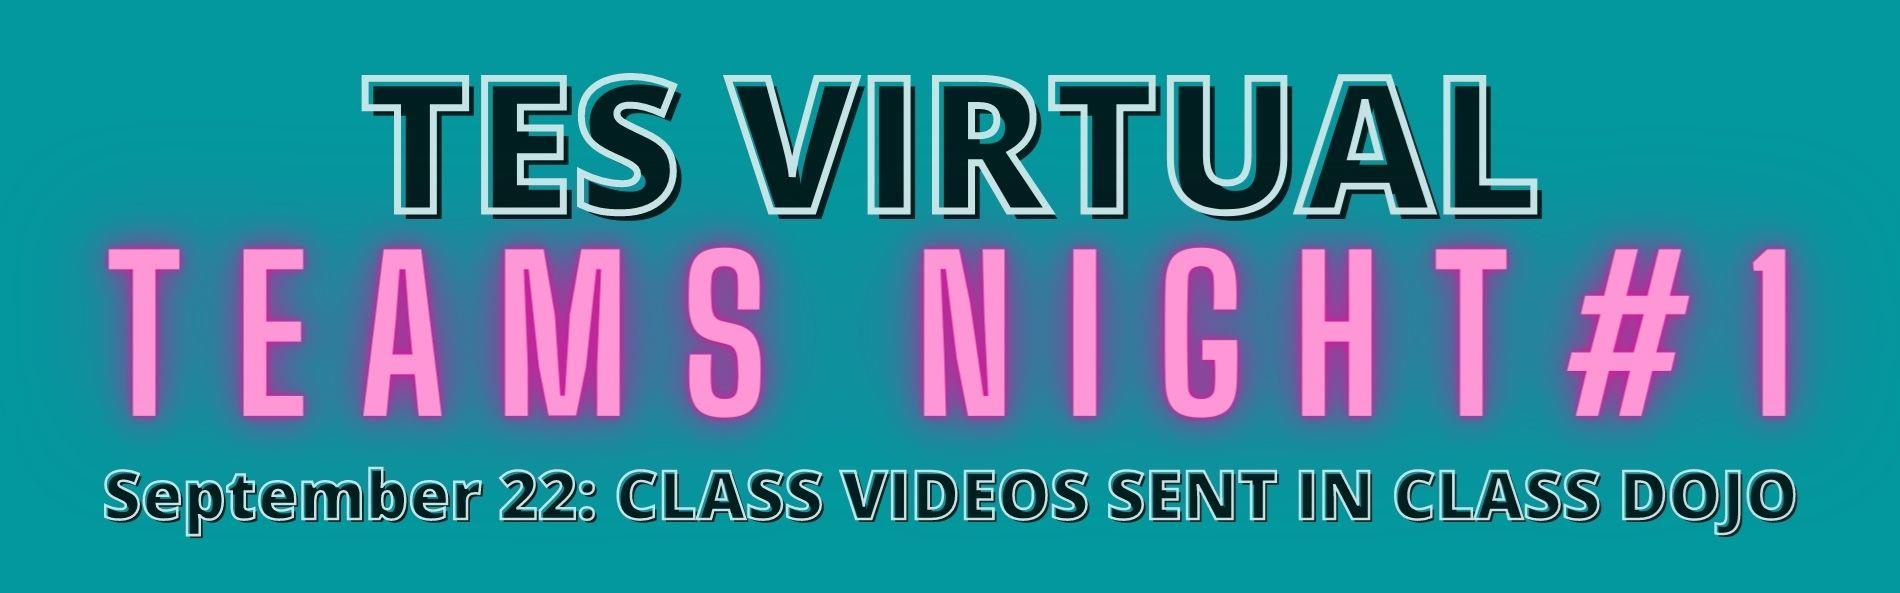 virtual night